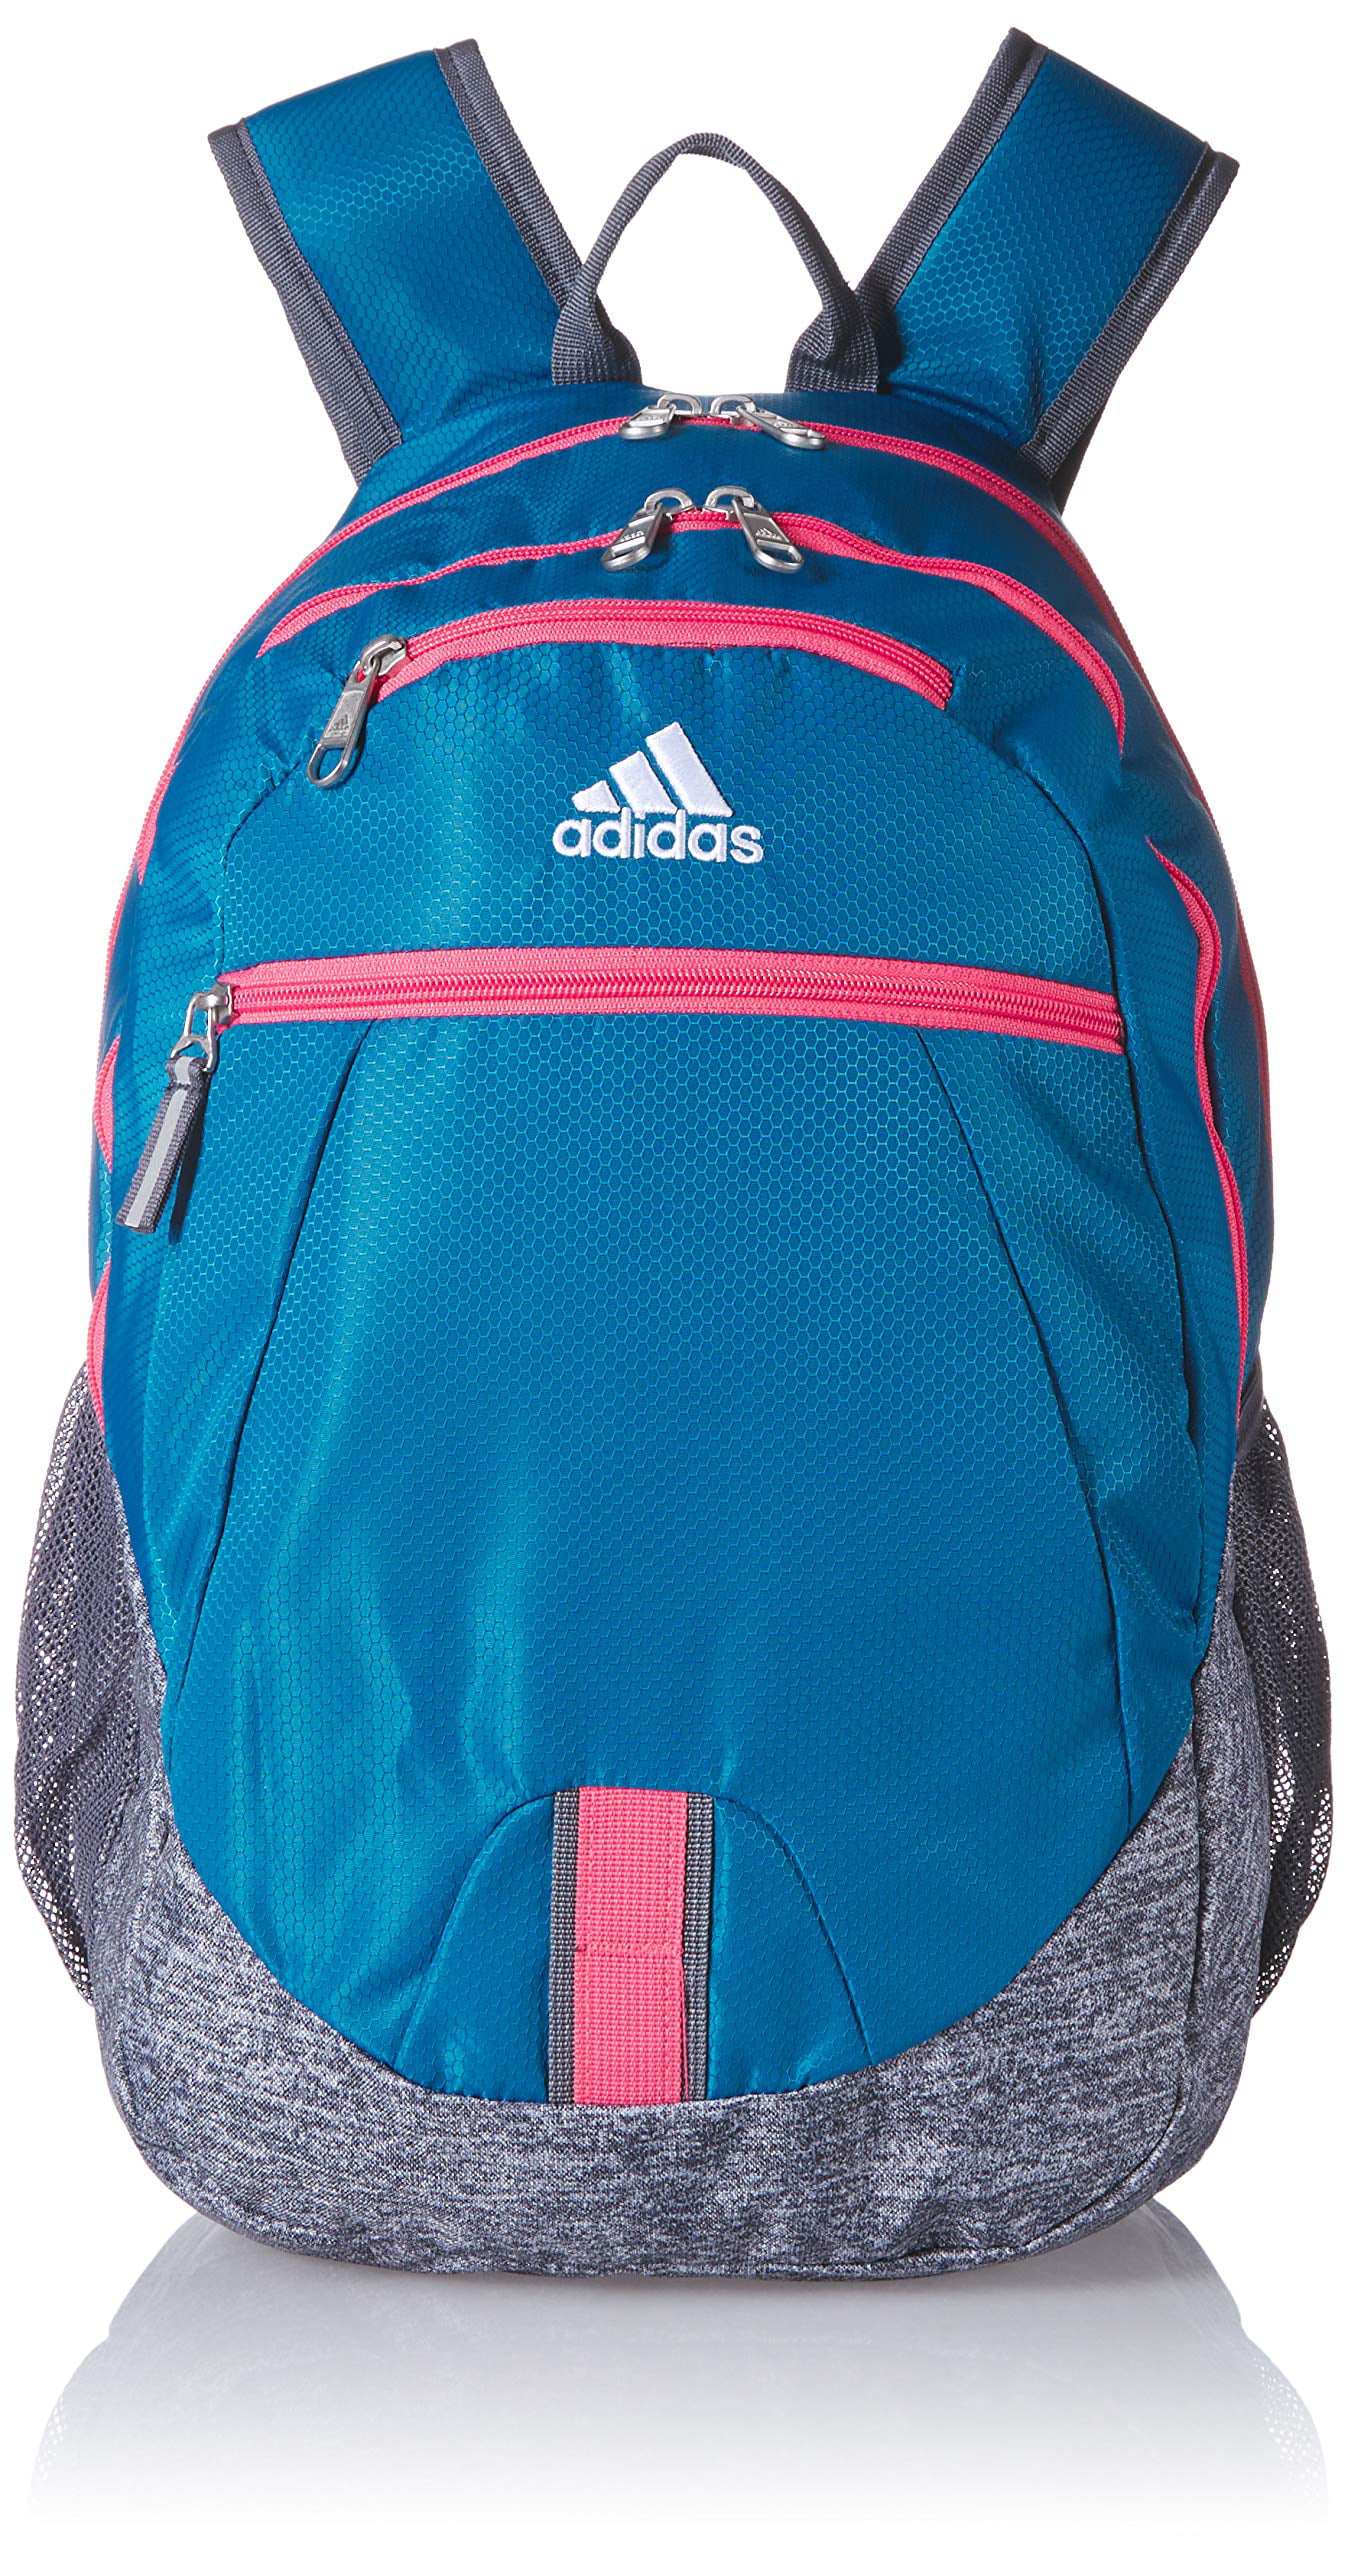 adidas foundation backpack